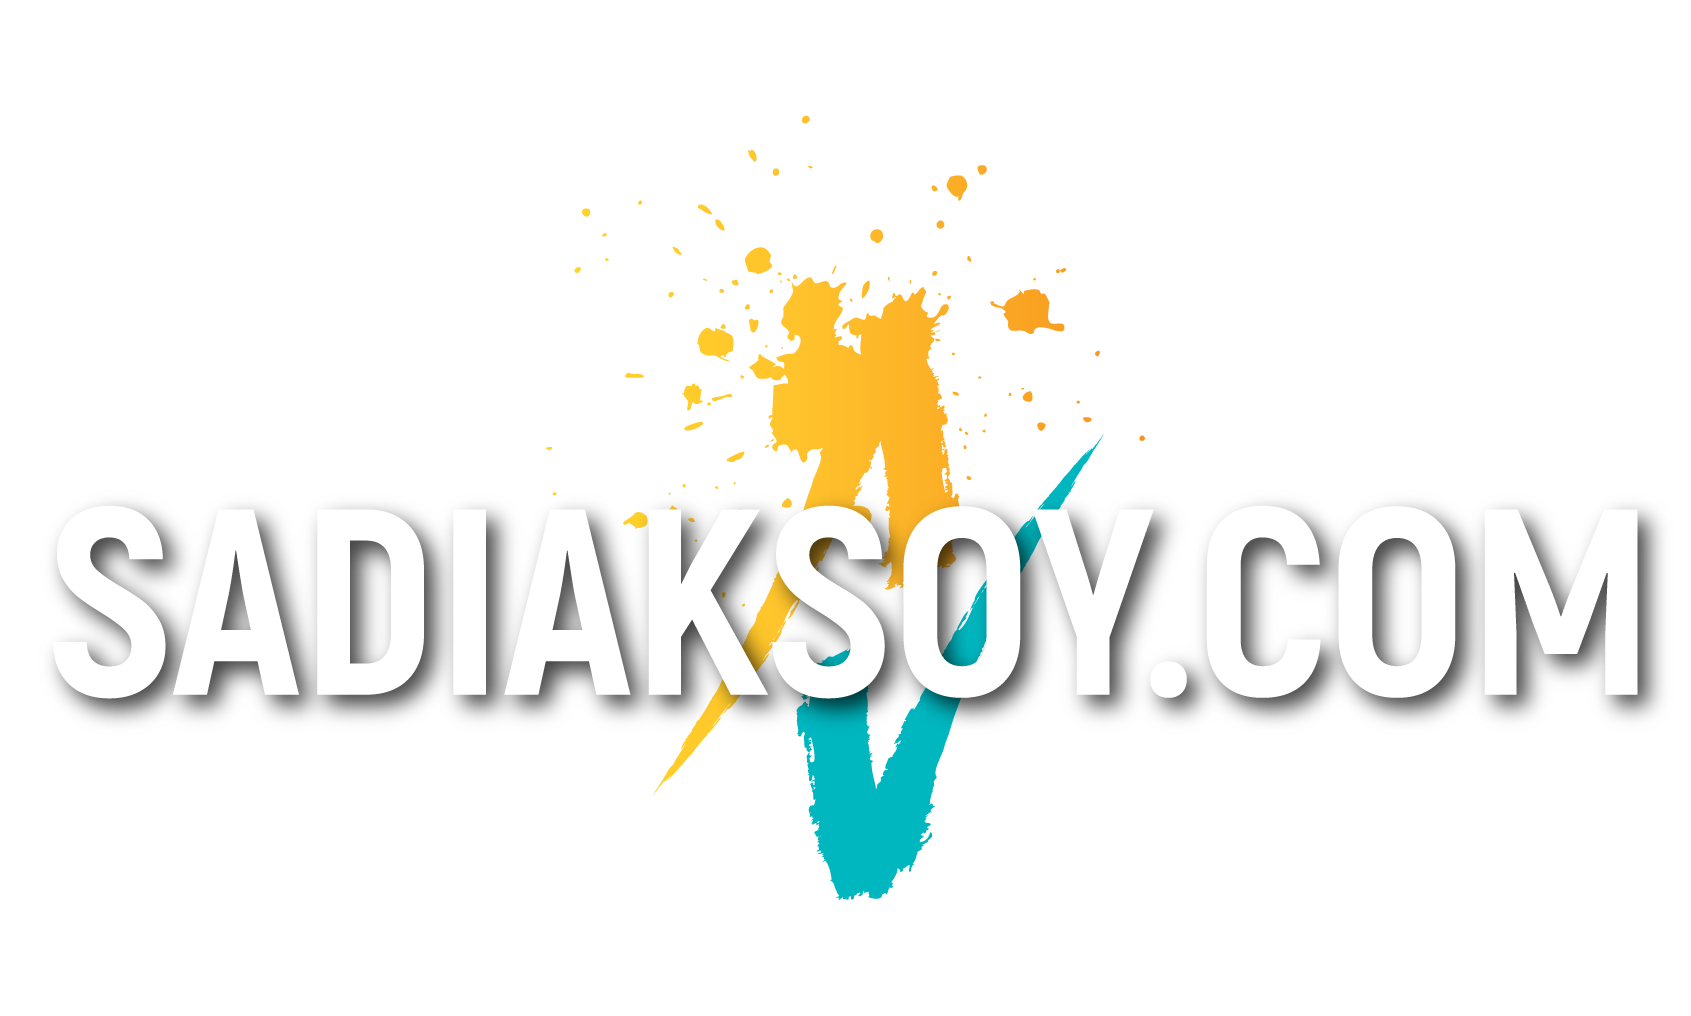 sadiaksoy.com logo